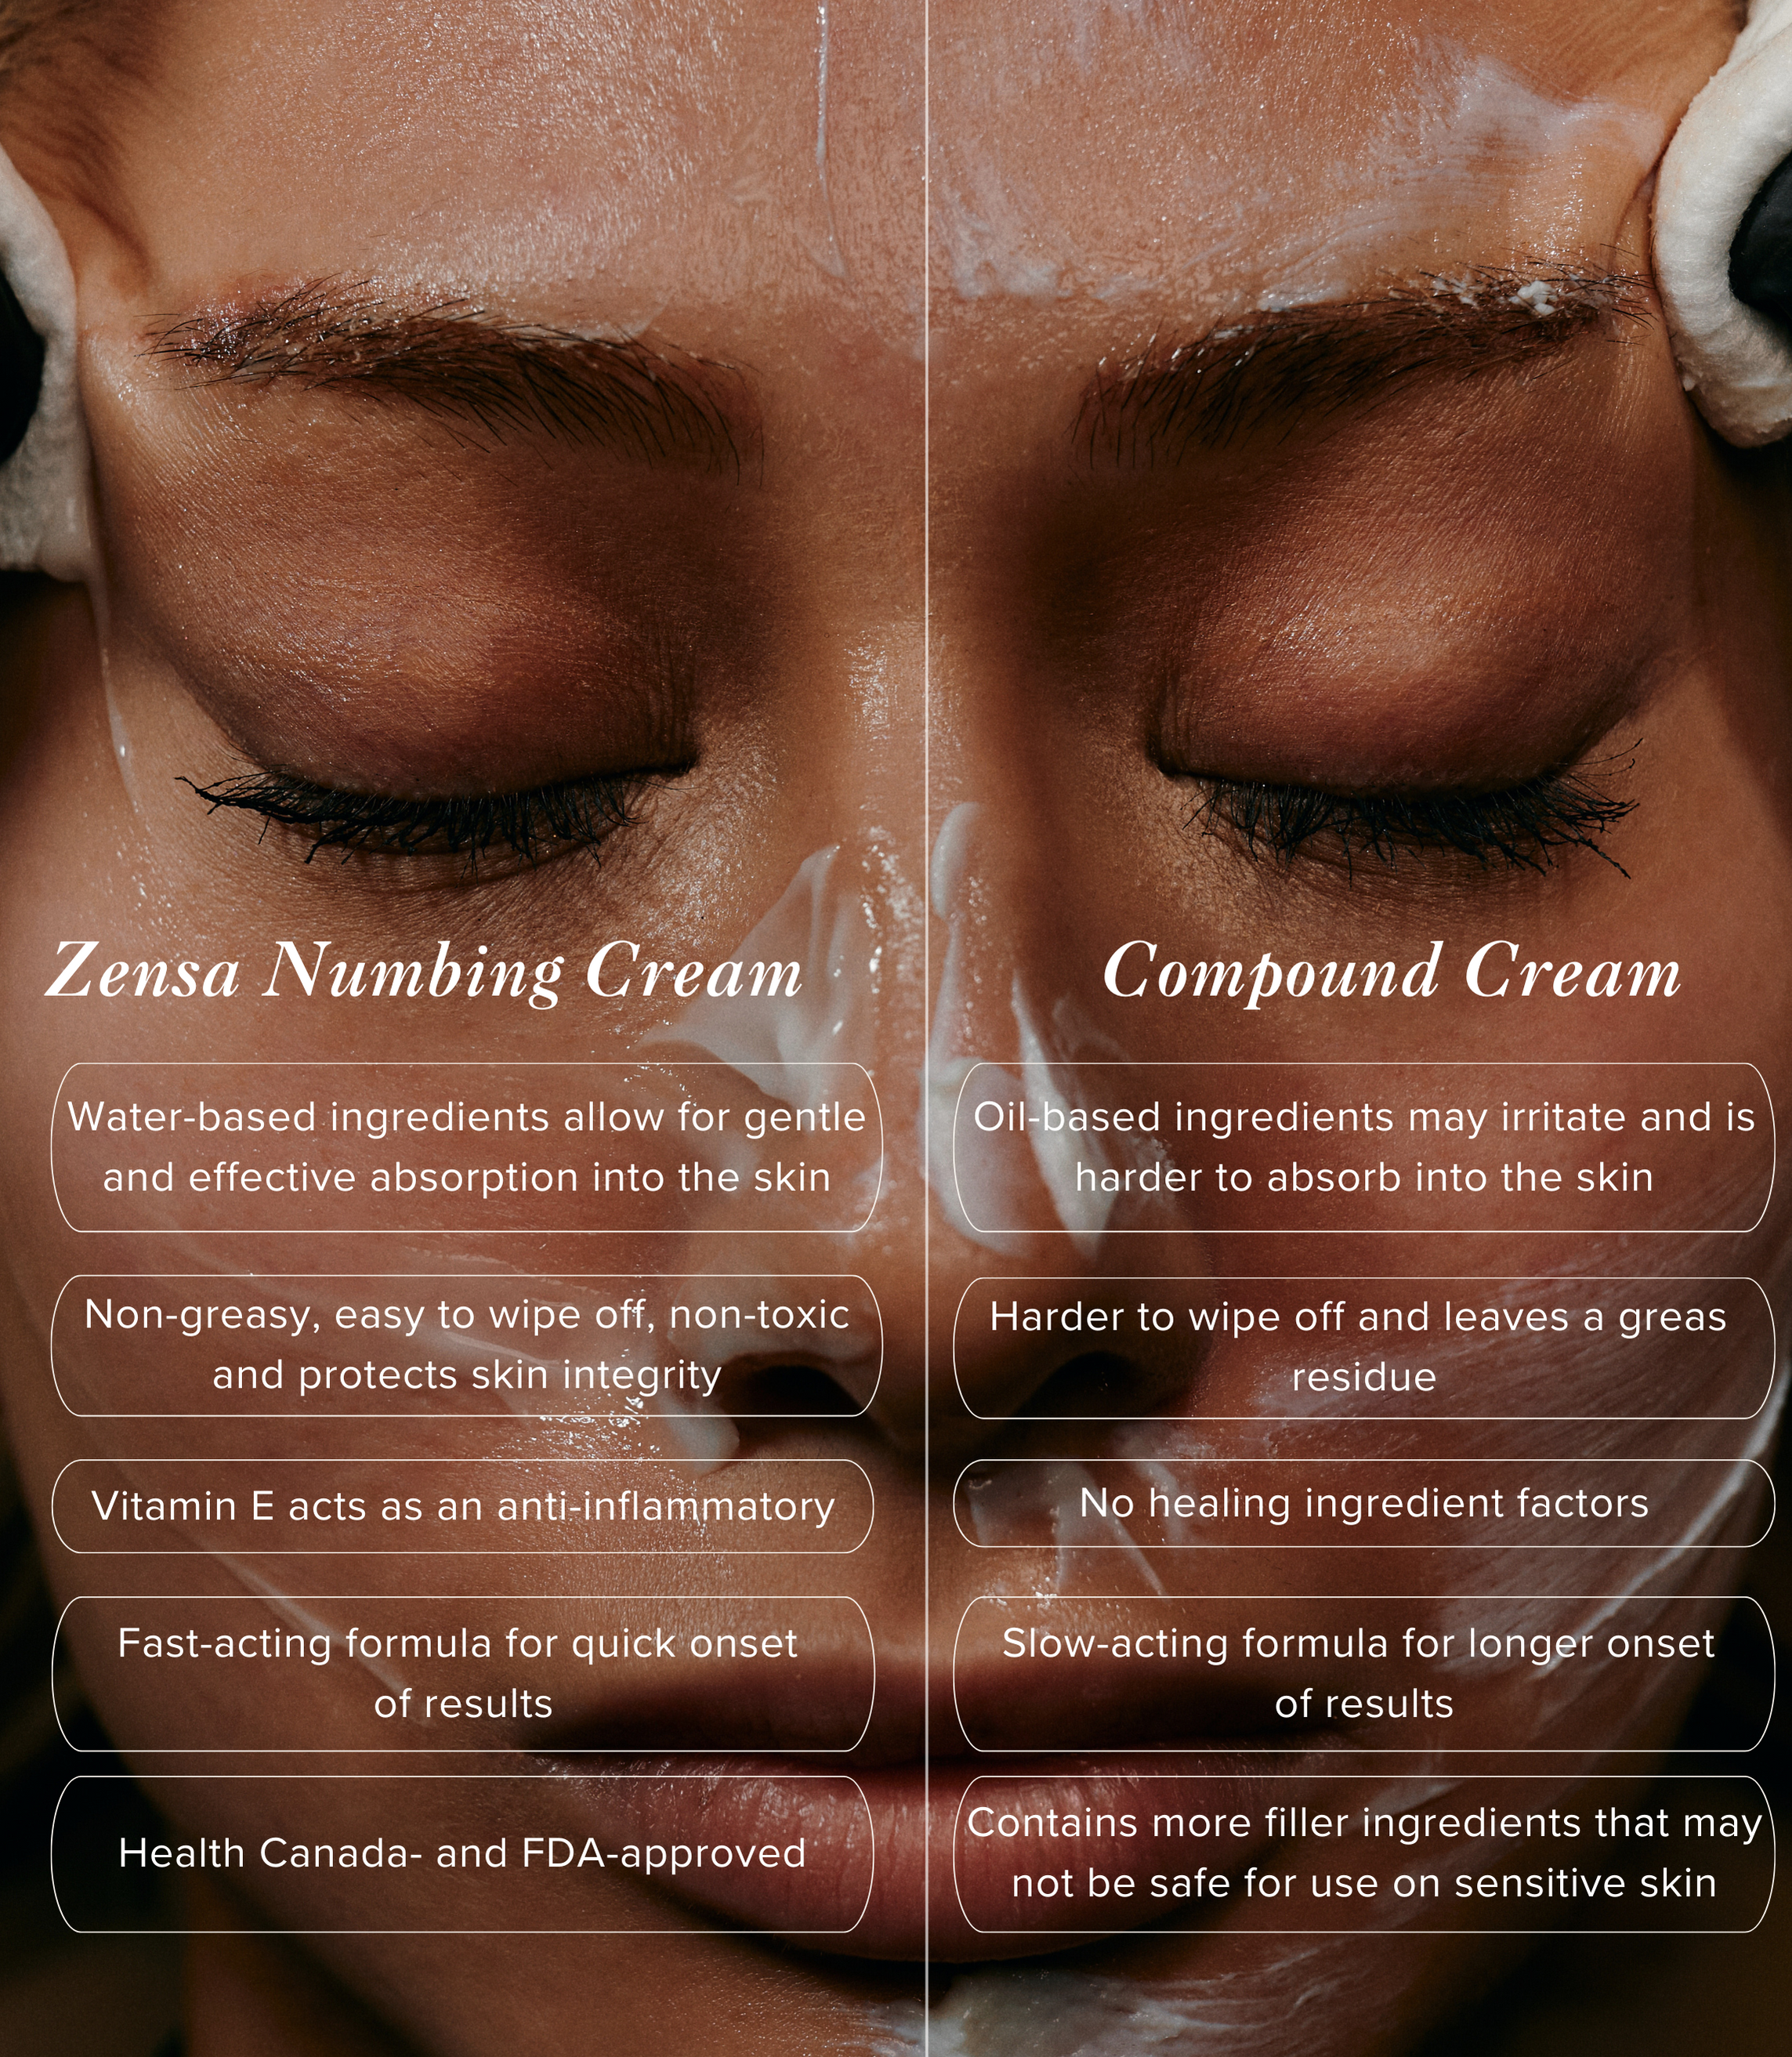 Zensa vs. Compound Cream Comparison Chart